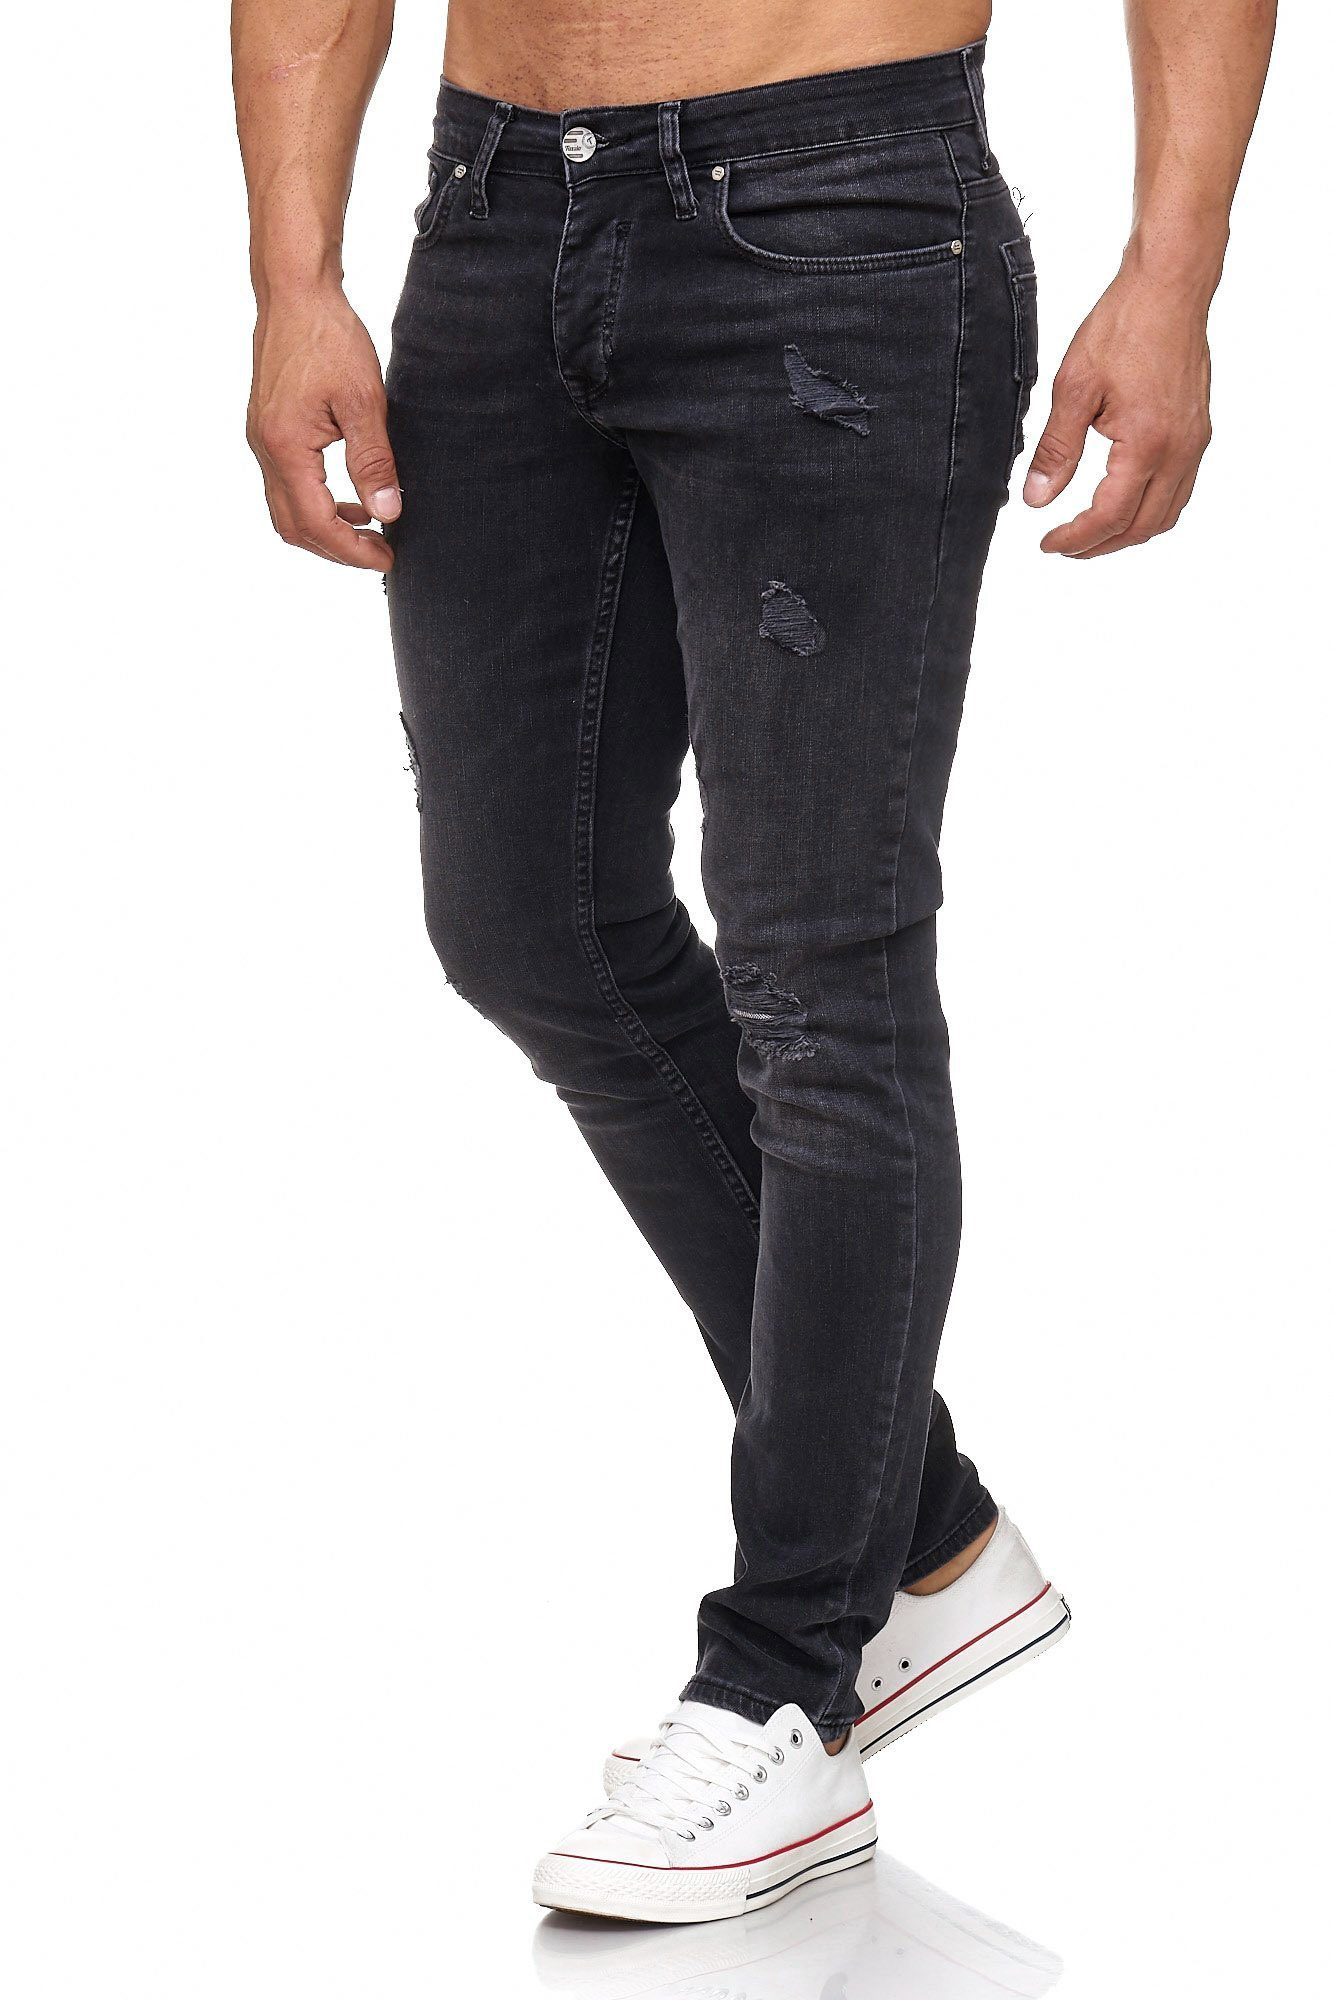 Herren Destroyed Jeans Große Größe online kaufen | OTTO